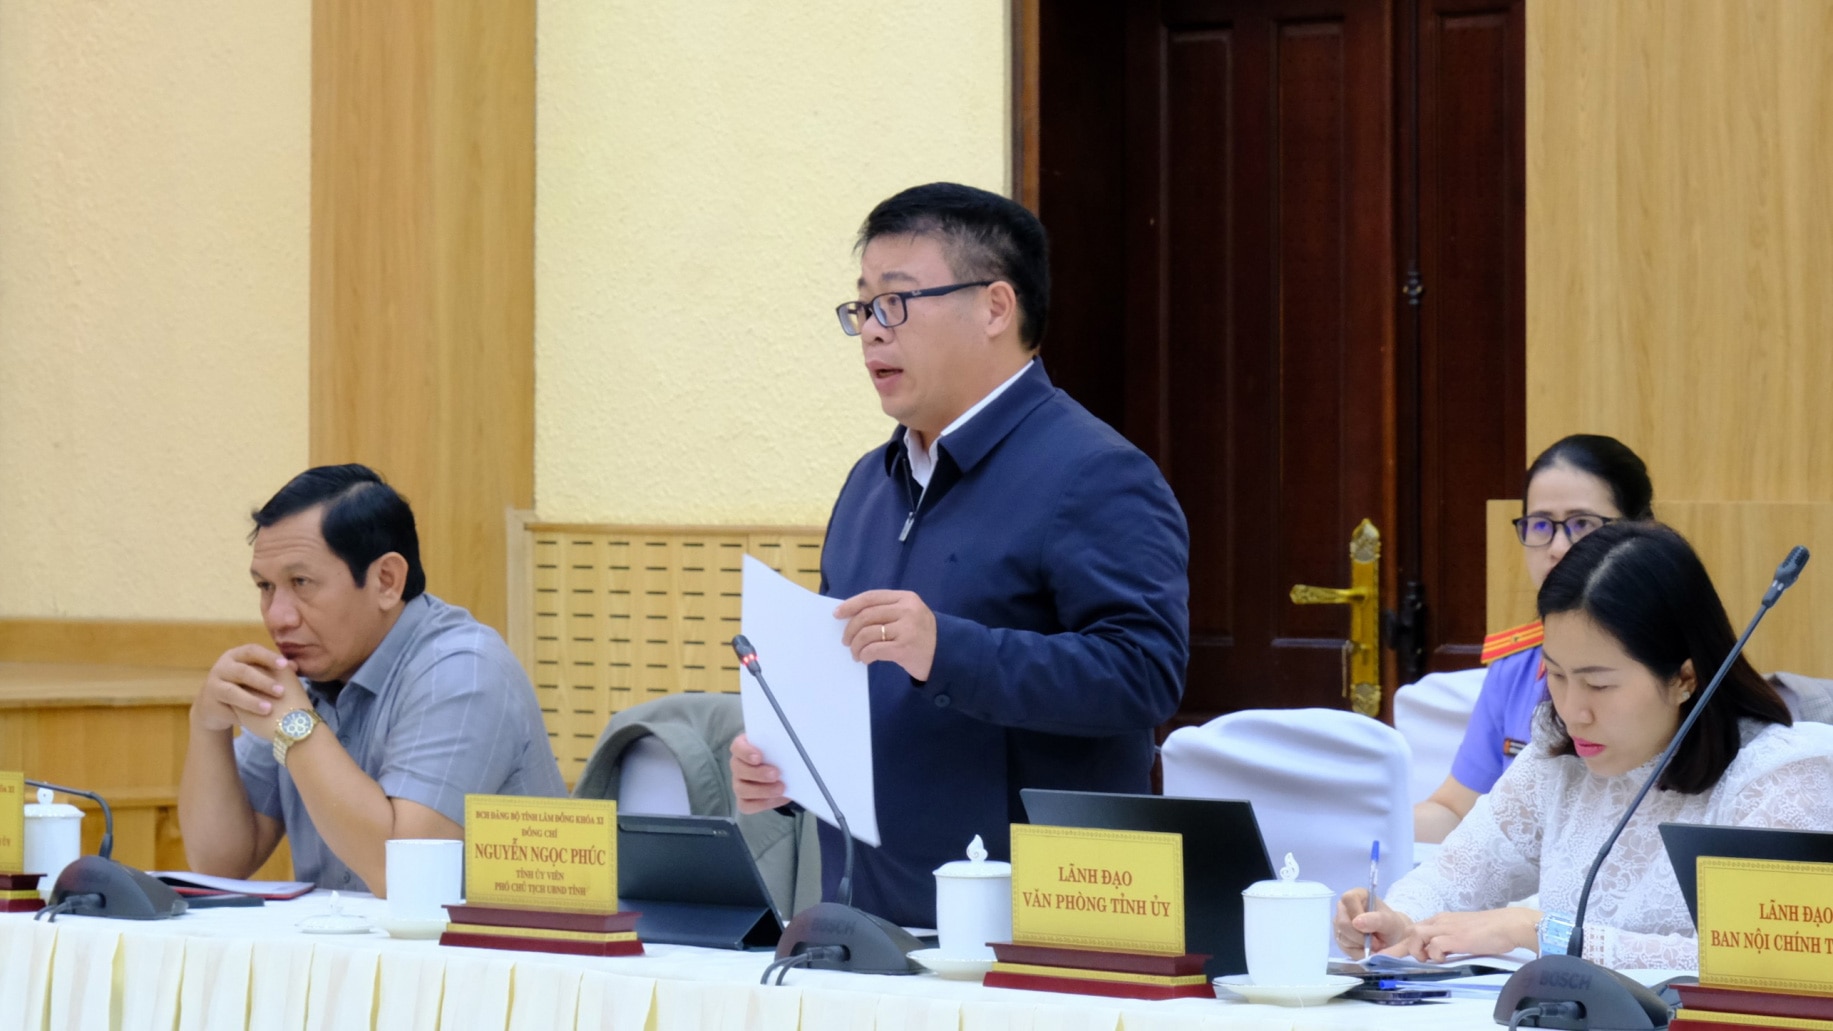 Phó Chủ tịch UBND tỉnh Nguyễn Ngọc Phúc trả lời ý kiến của công dân